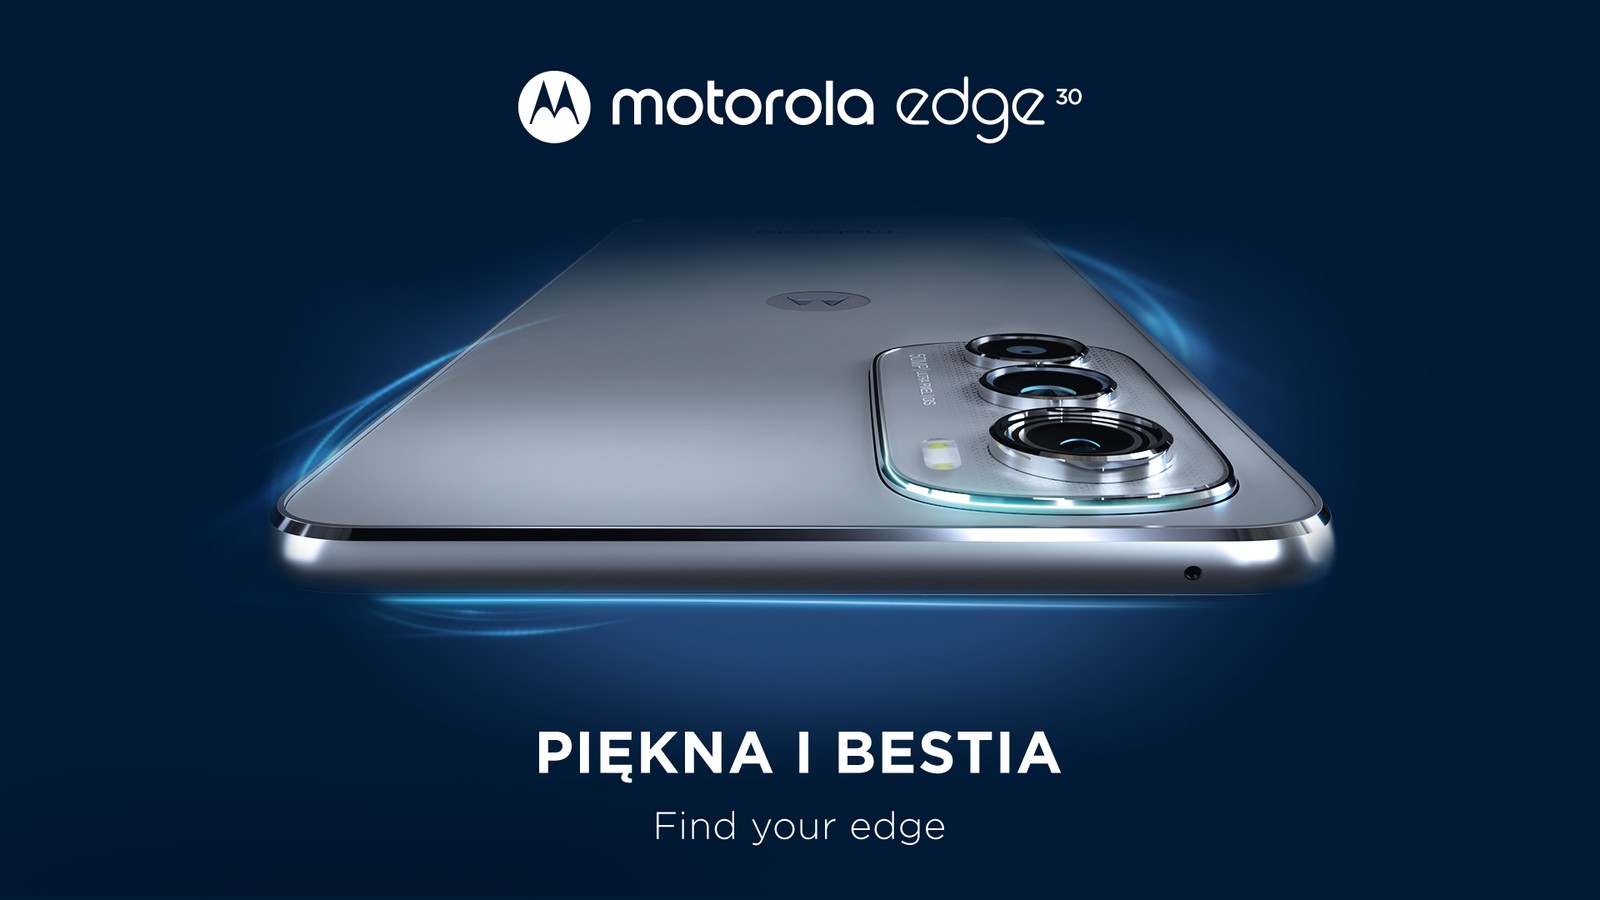 Po dwóch tygodniach od globalnej premiery, Motorola edge 30 trafia do polskich sklepów. Ile kosztuje?